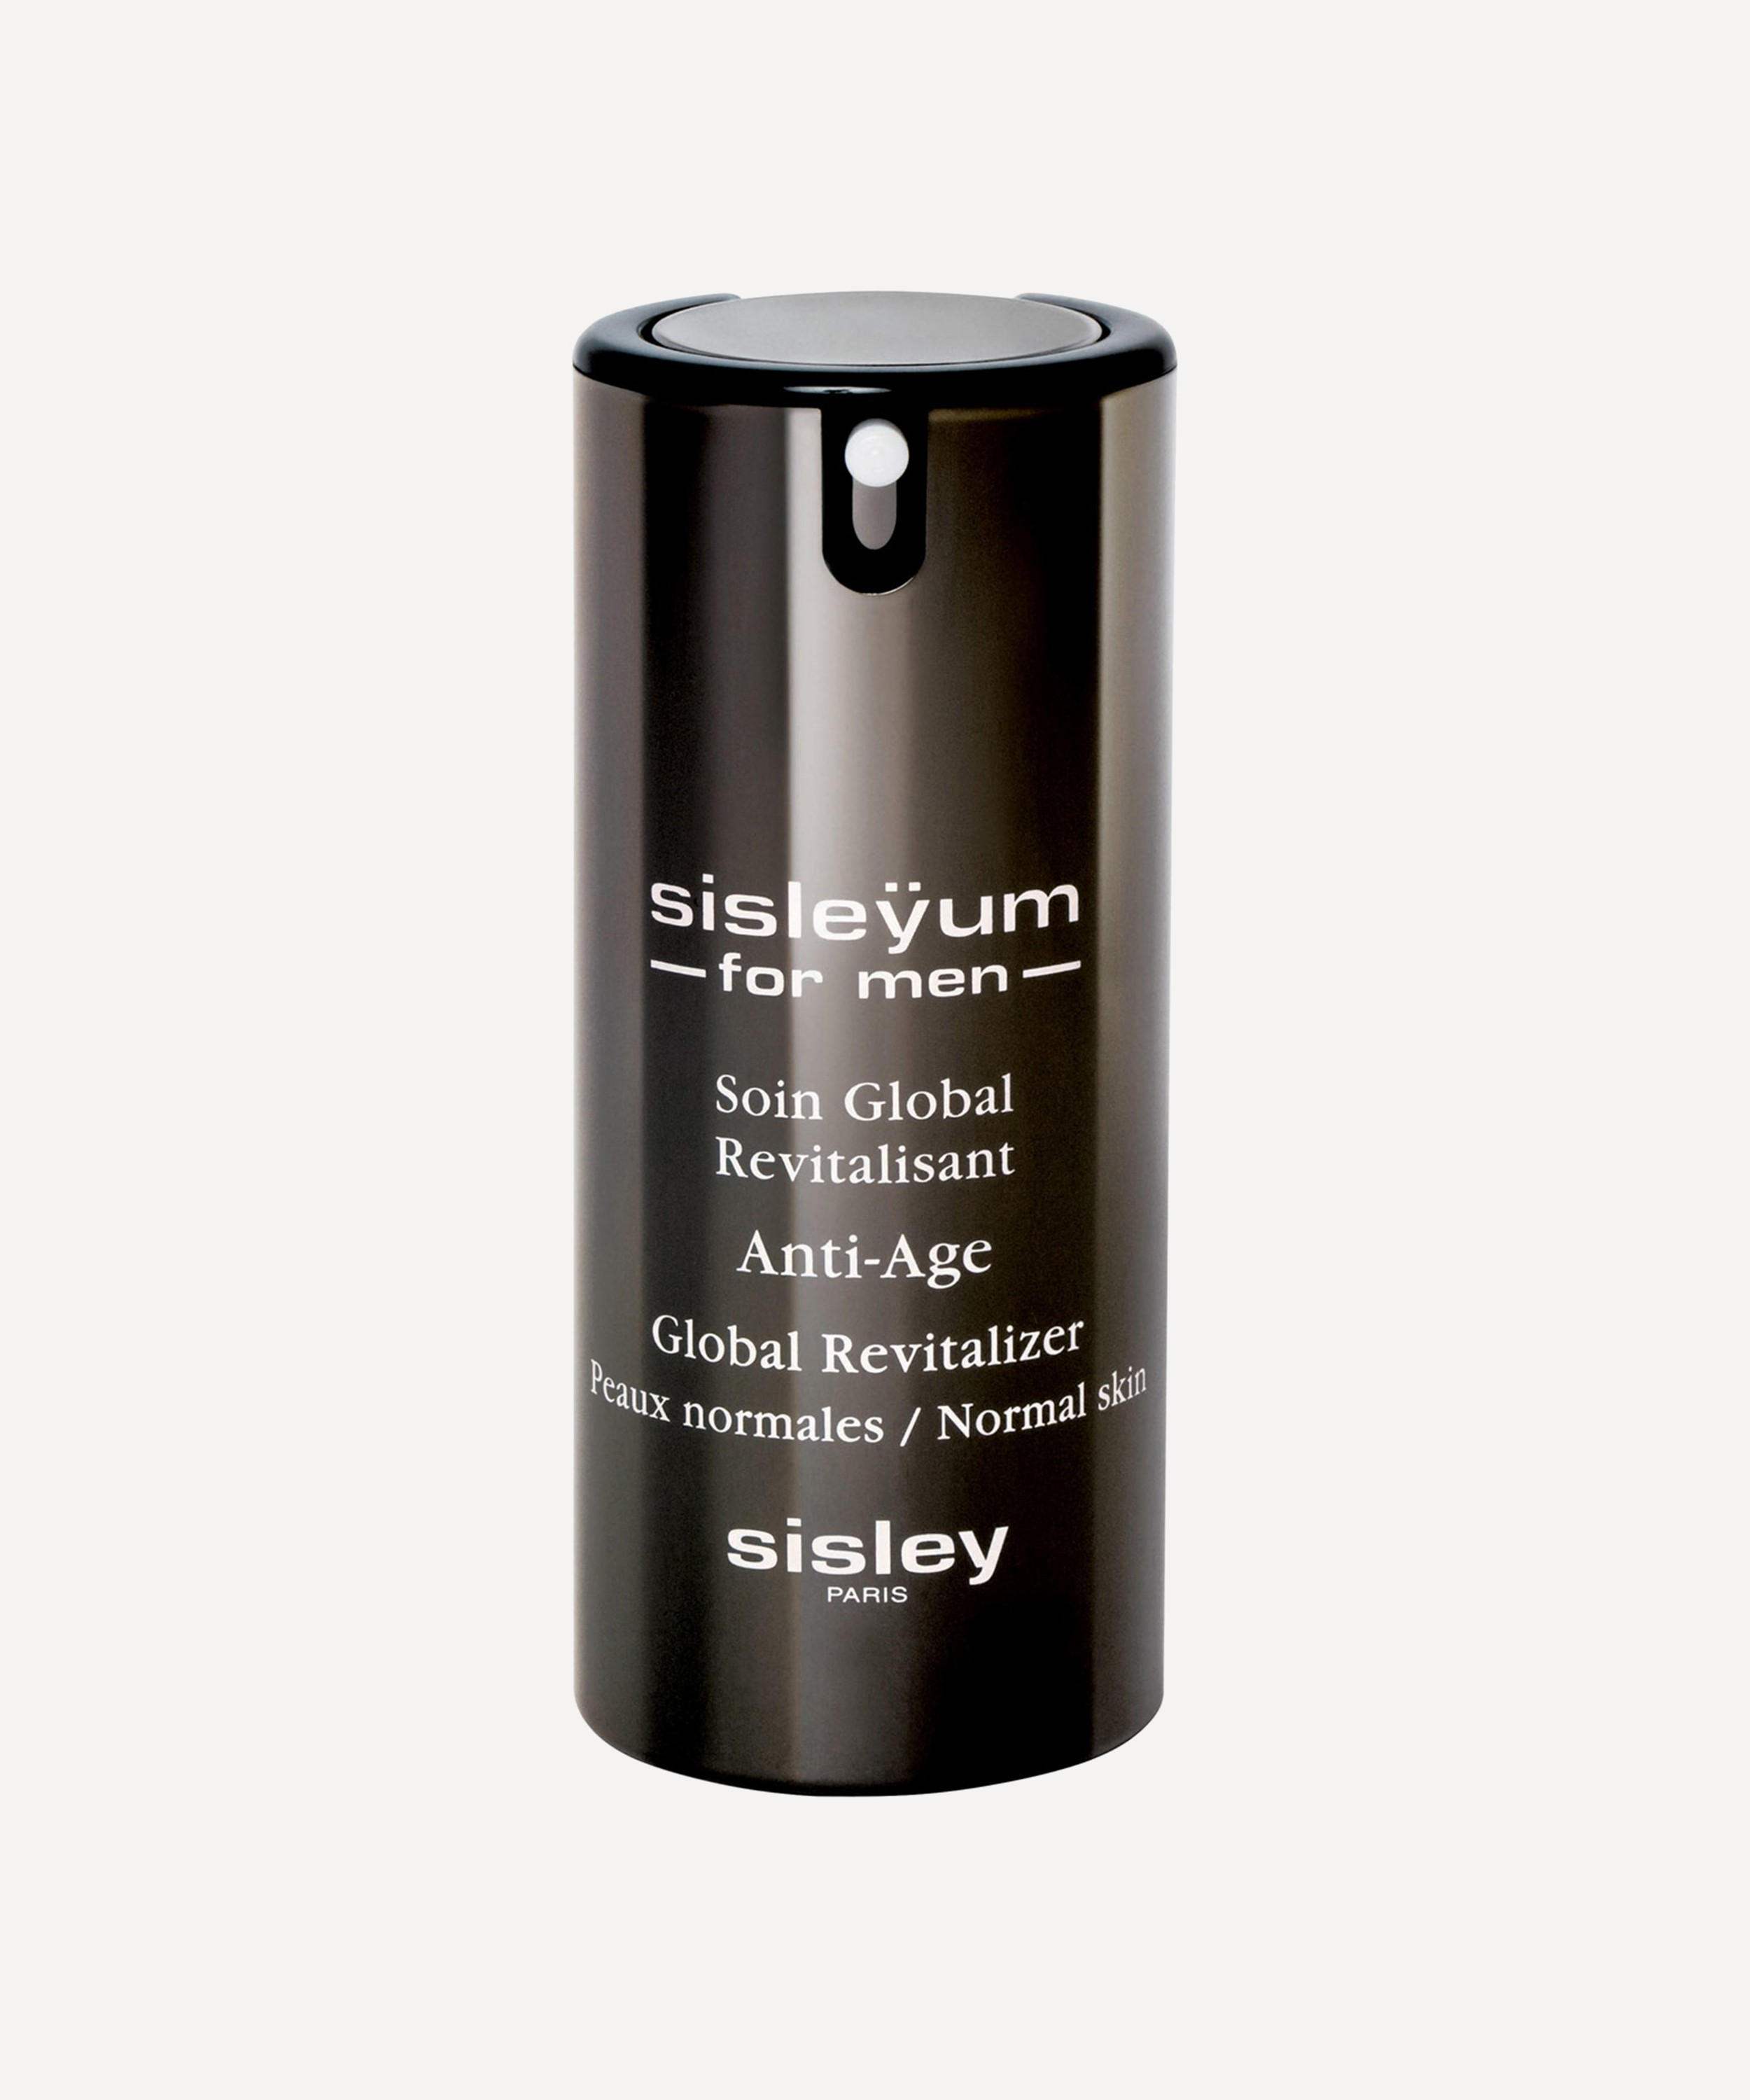 Sisley Paris - Sisleyum for Men for Normal Skin 50ml image number 0